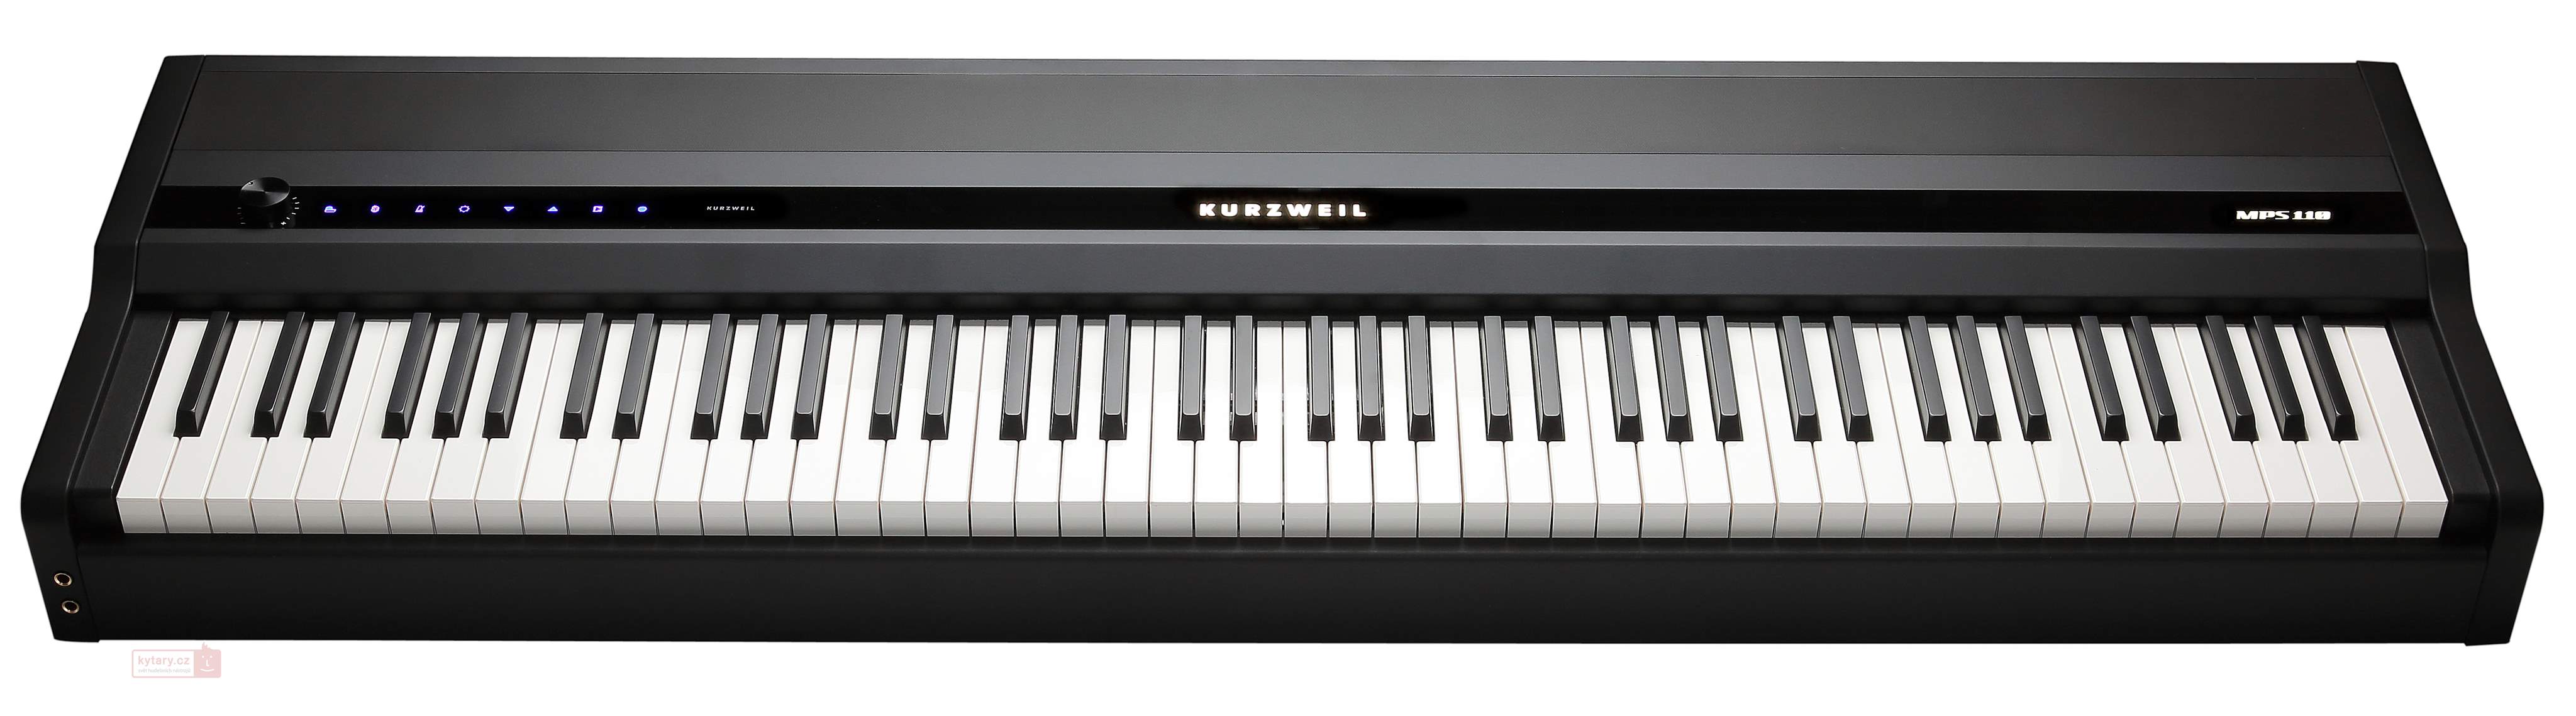 Kurzweil MPS110 Stage piano s ozvučením - máme kompletní sortiment!